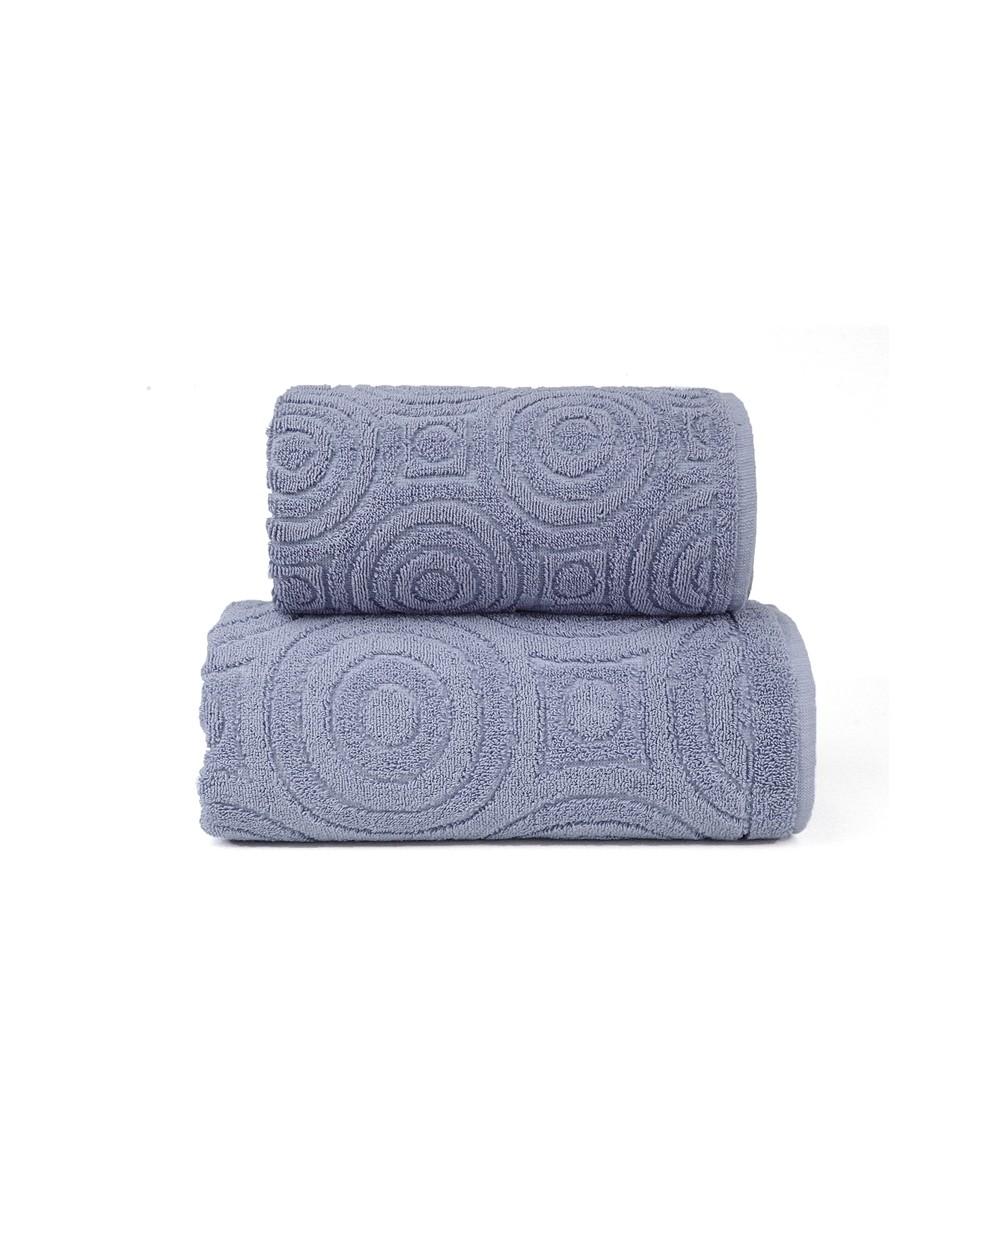 Ręcznik Emma 2 bawełna 70x140 popielaty